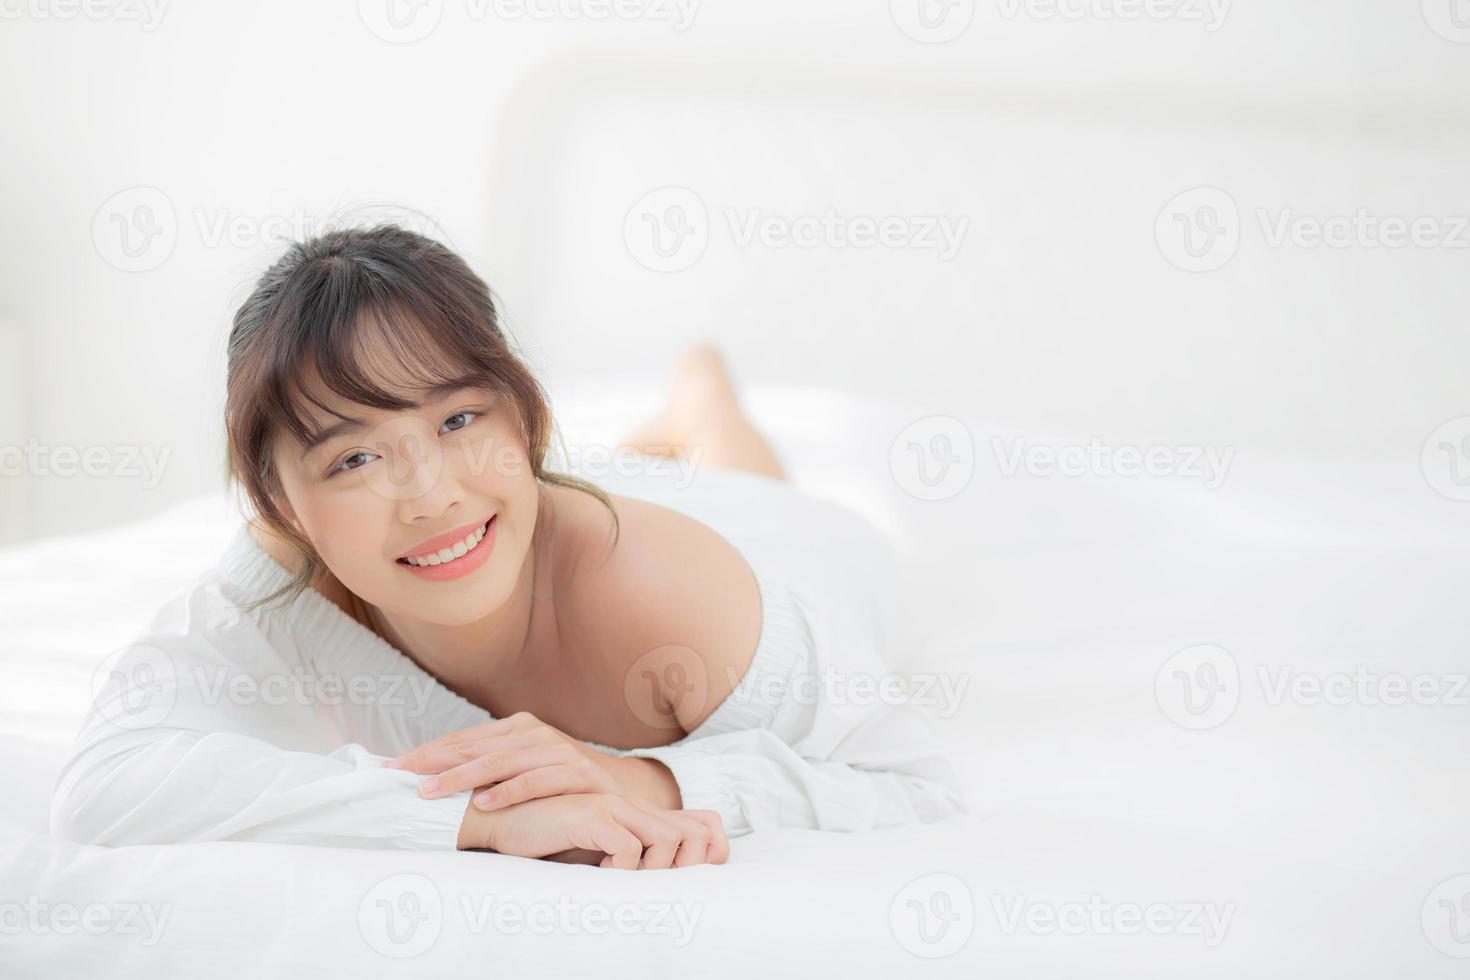 beau portrait jeune femme asiatique allongée et souriante au réveil avec le lever du soleil le matin, beauté jolie fille heureuse et joyeuse reposant sur le lit dans la chambre, mode de vie et concept de détente. photo